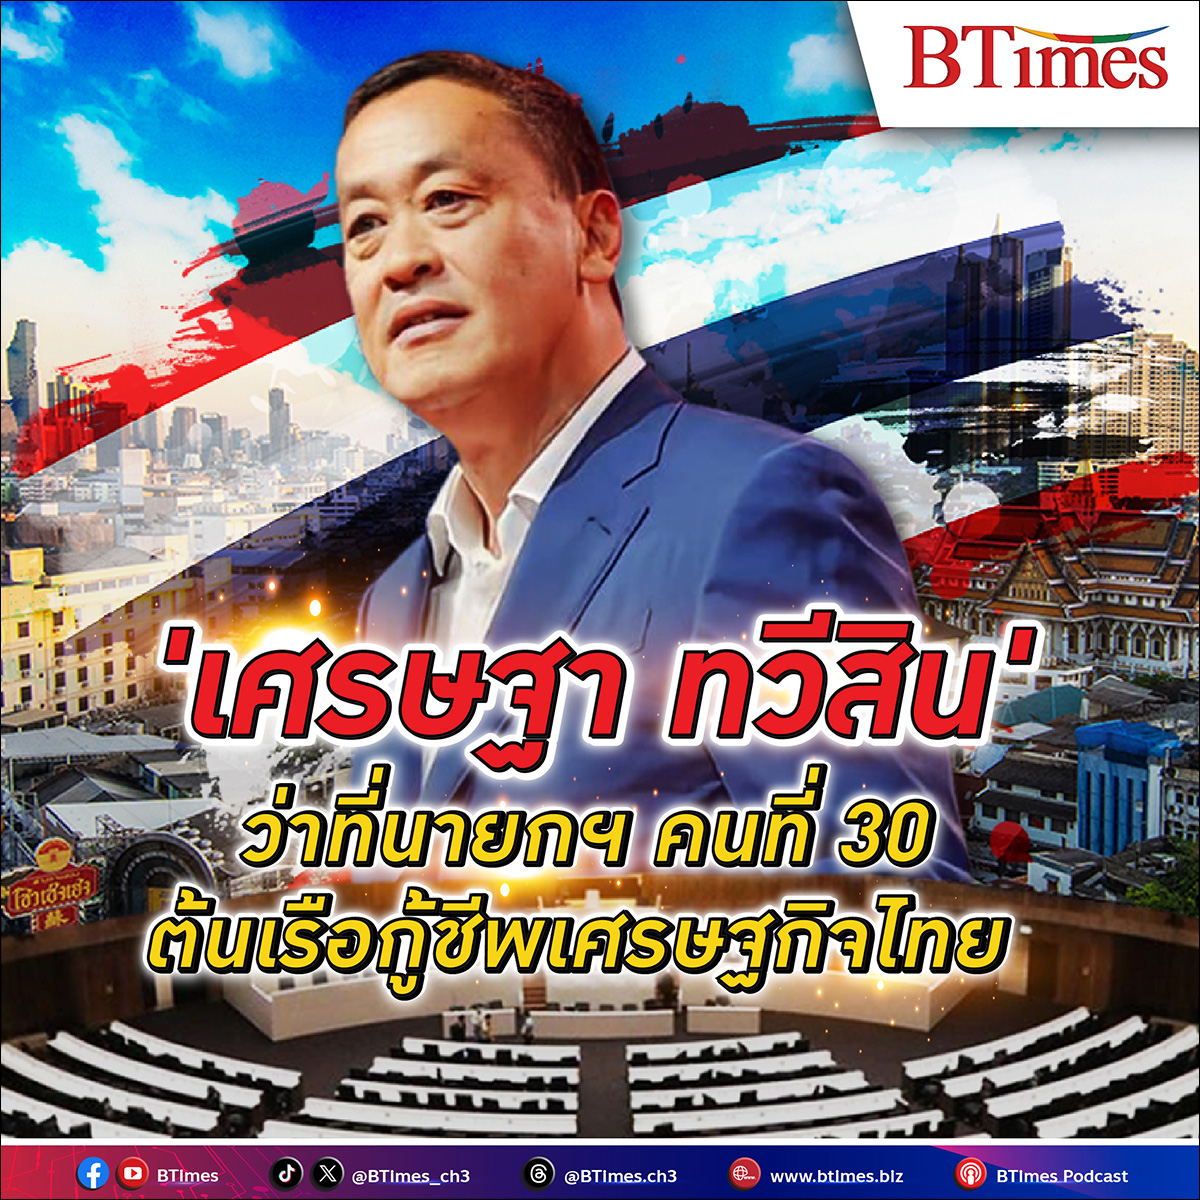 เปิดประวัติ “เศรษฐา ทวีสิน” ว่าที่นายก คนที่ 30 ของไทย หัวเรือแจวเศรษฐกิจไทยฟื้น